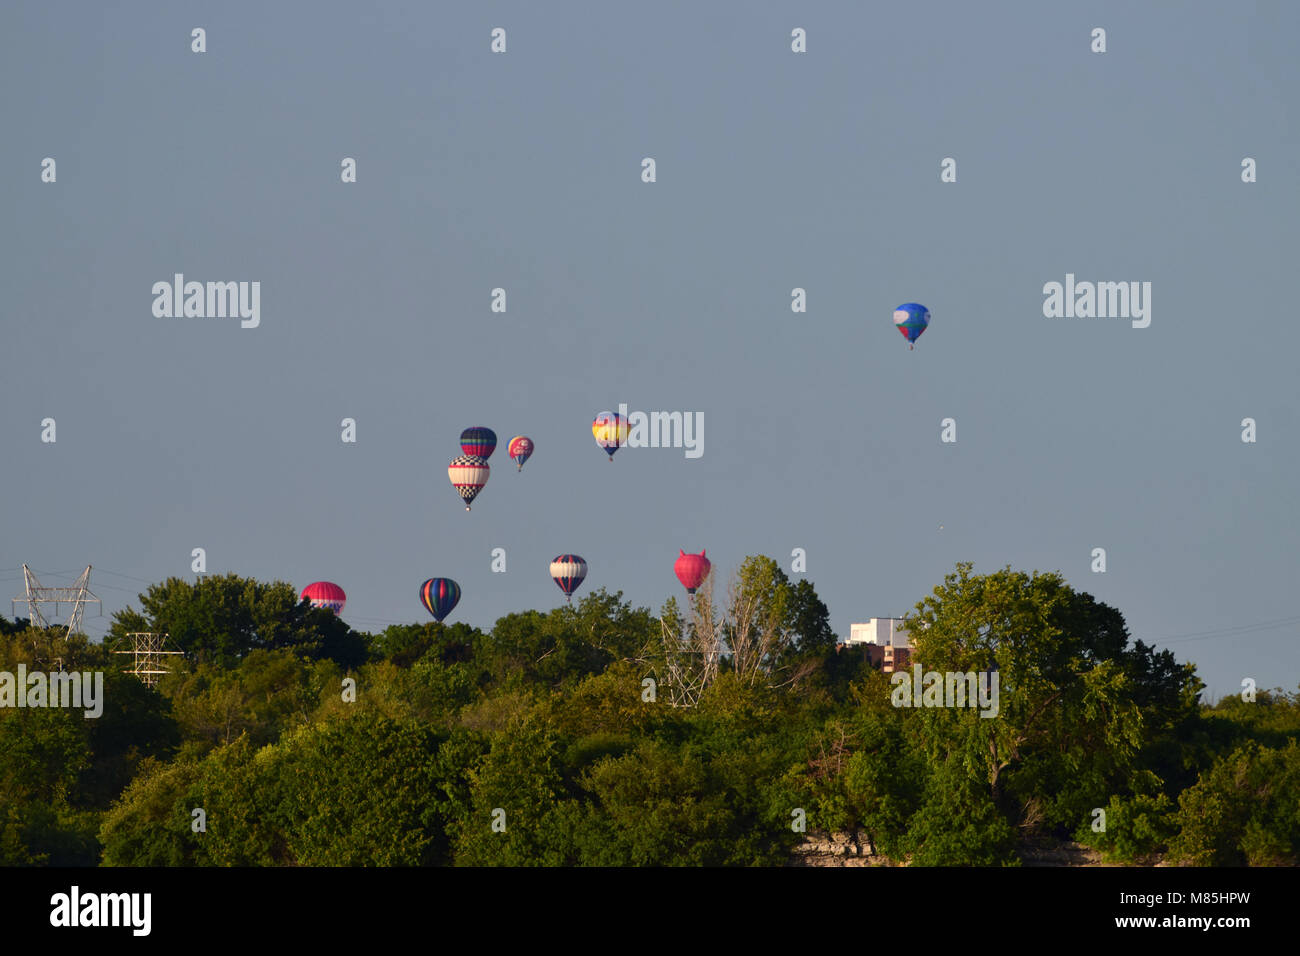 Heißluft-ballons über dem Ottawa River, als Teil des jährlichen Festival des mongolfieres in Gatineau Stockfoto